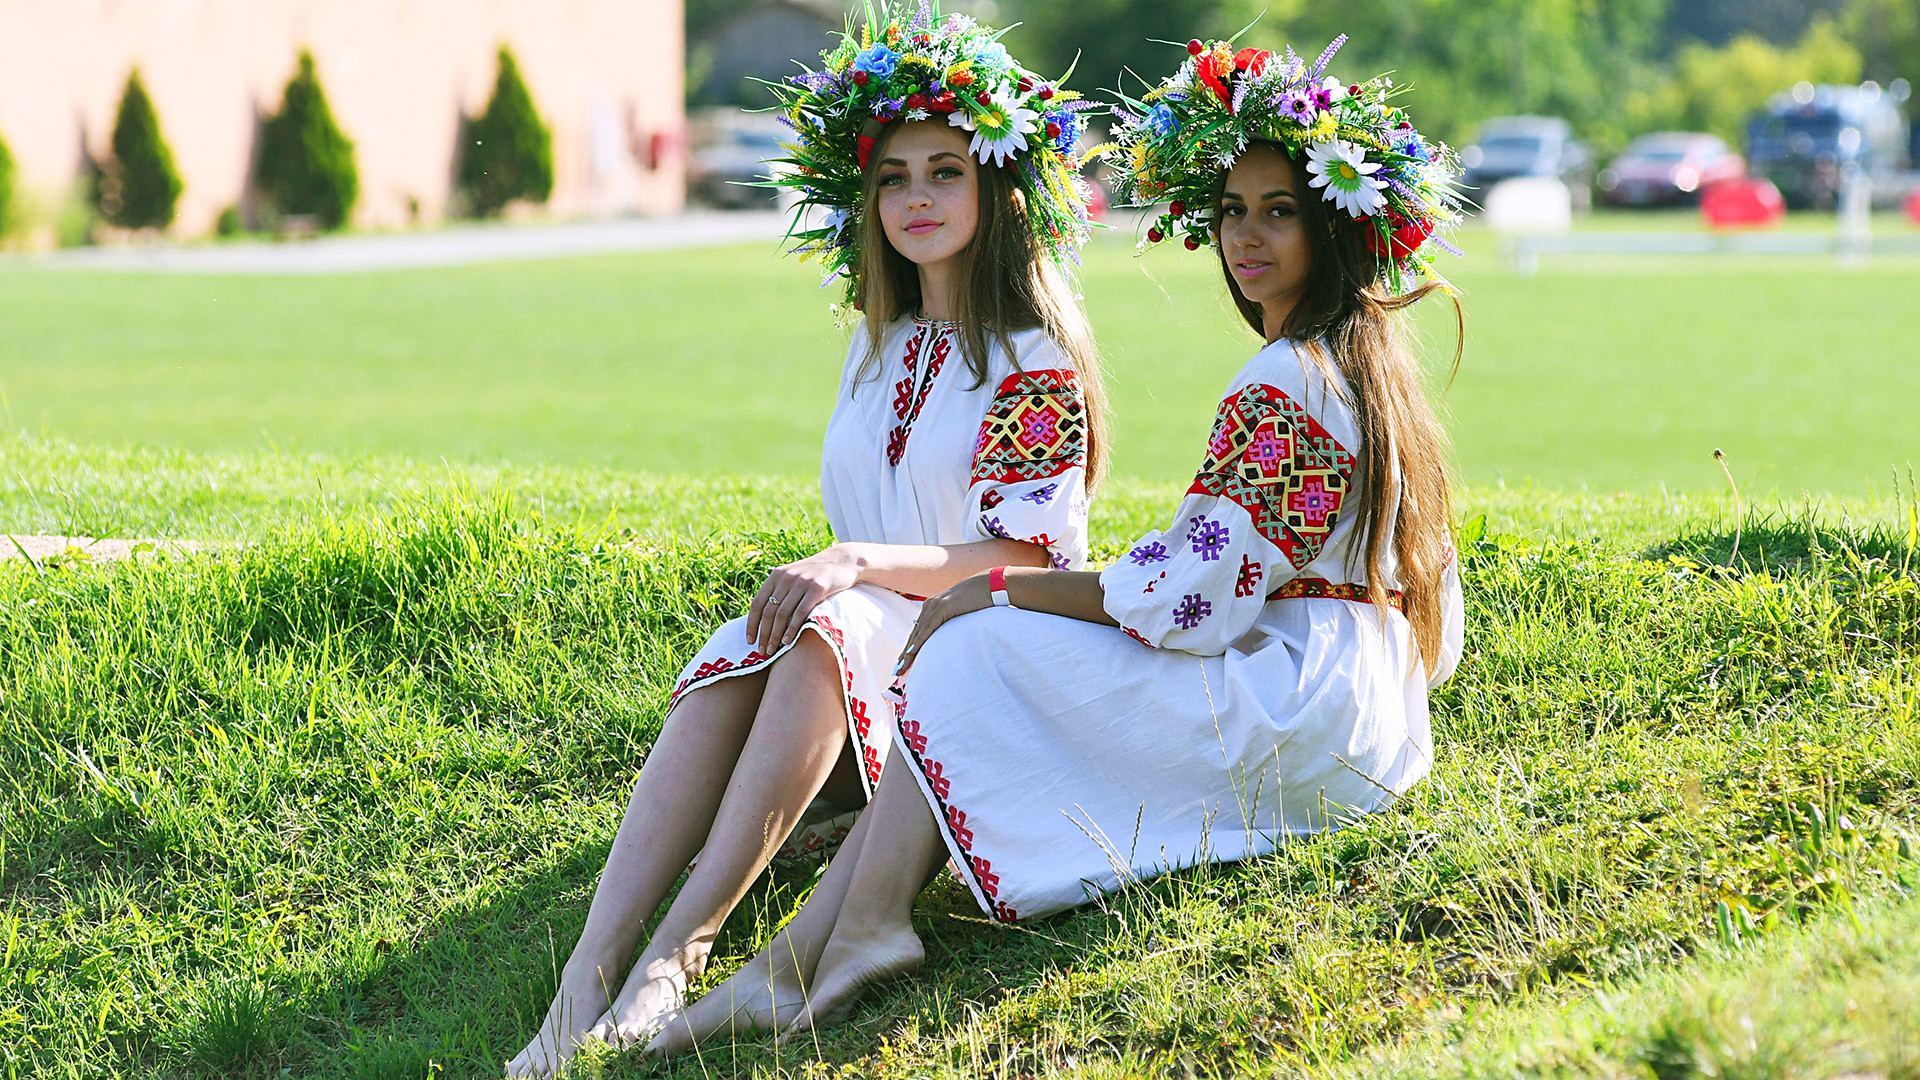 クリミア、バフチサライ地区、クイビシェヴォ村。イワン・クパーラを祝う女性たち。